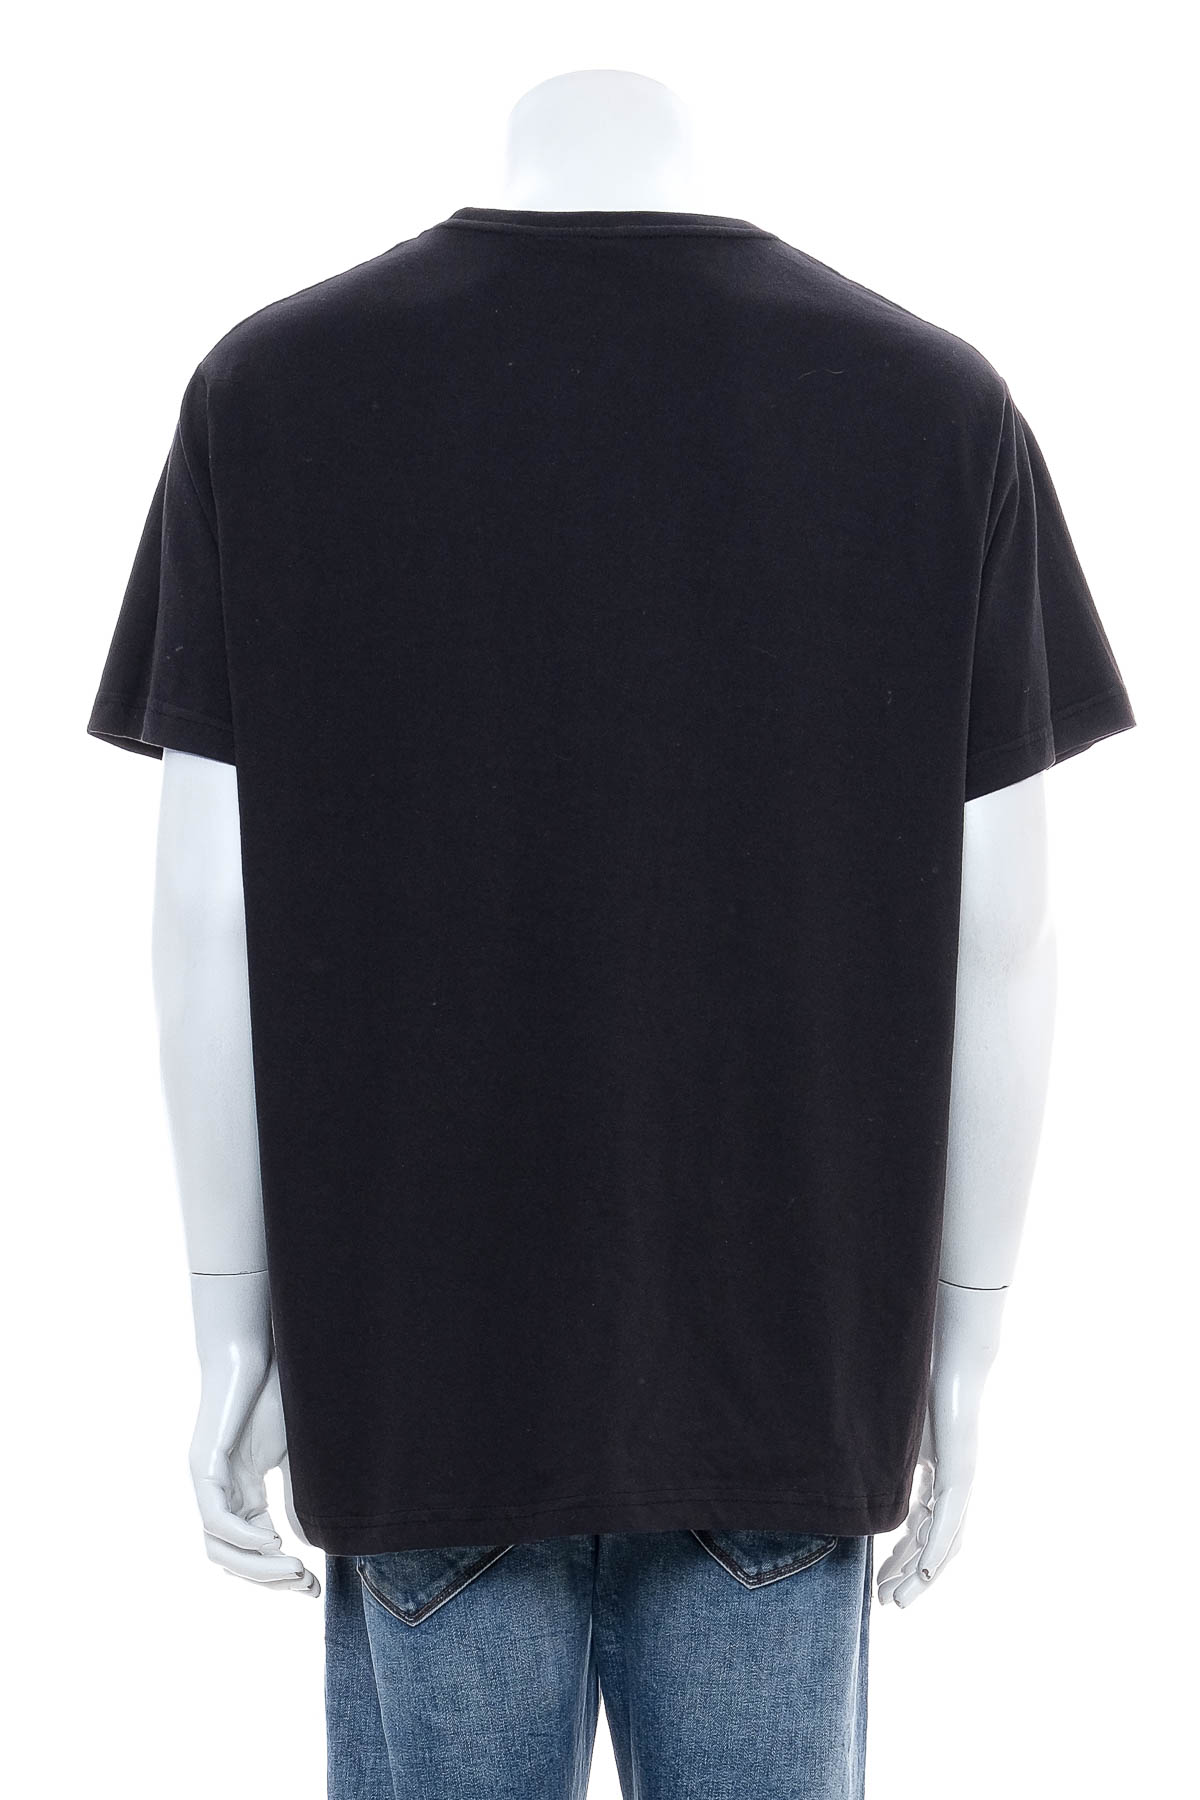 Ανδρικό μπλουζάκι - Louis - 1